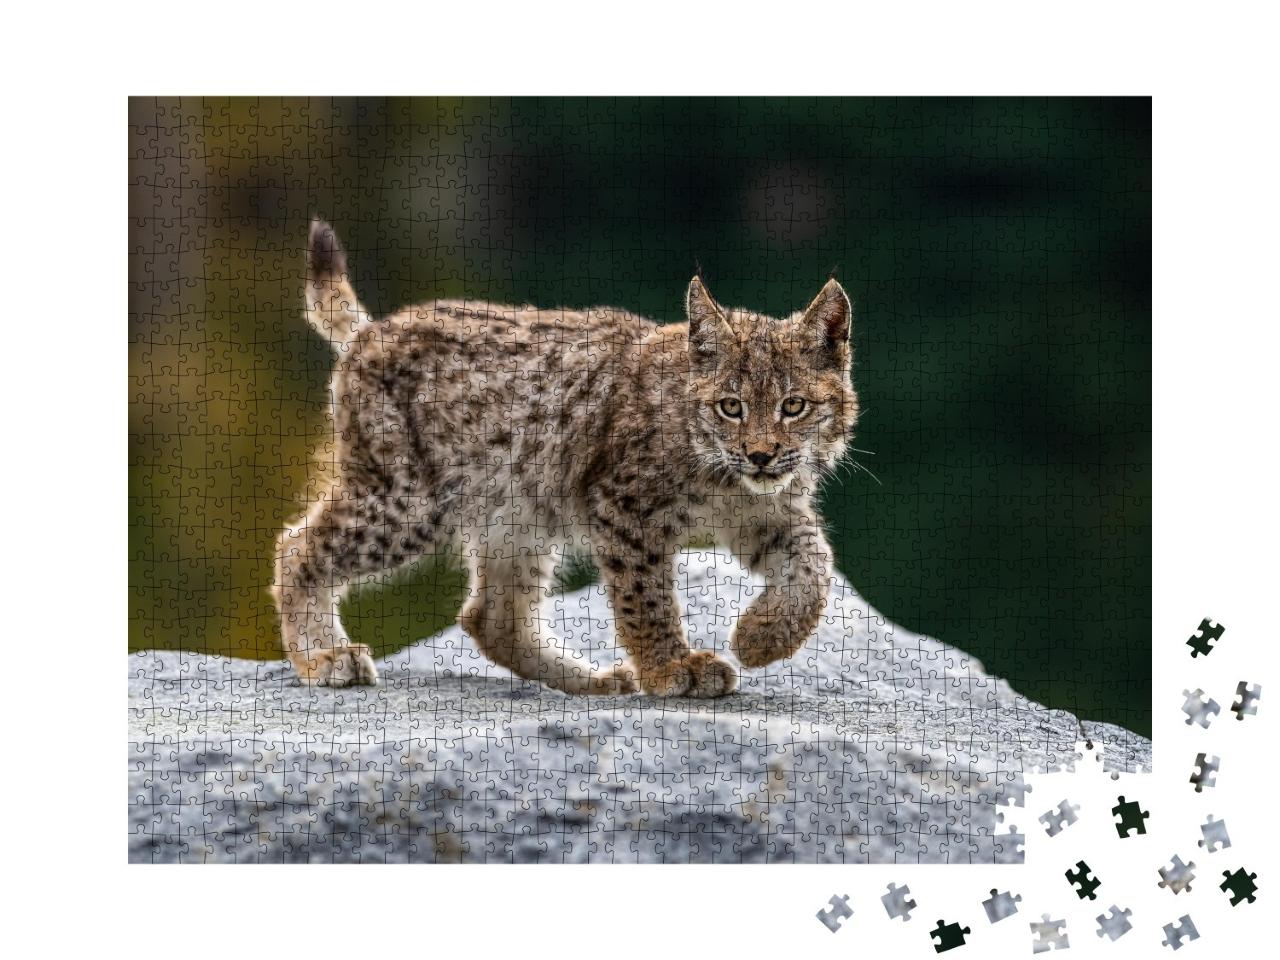 Puzzle de 1000 pièces « Jeune lynx attentif »